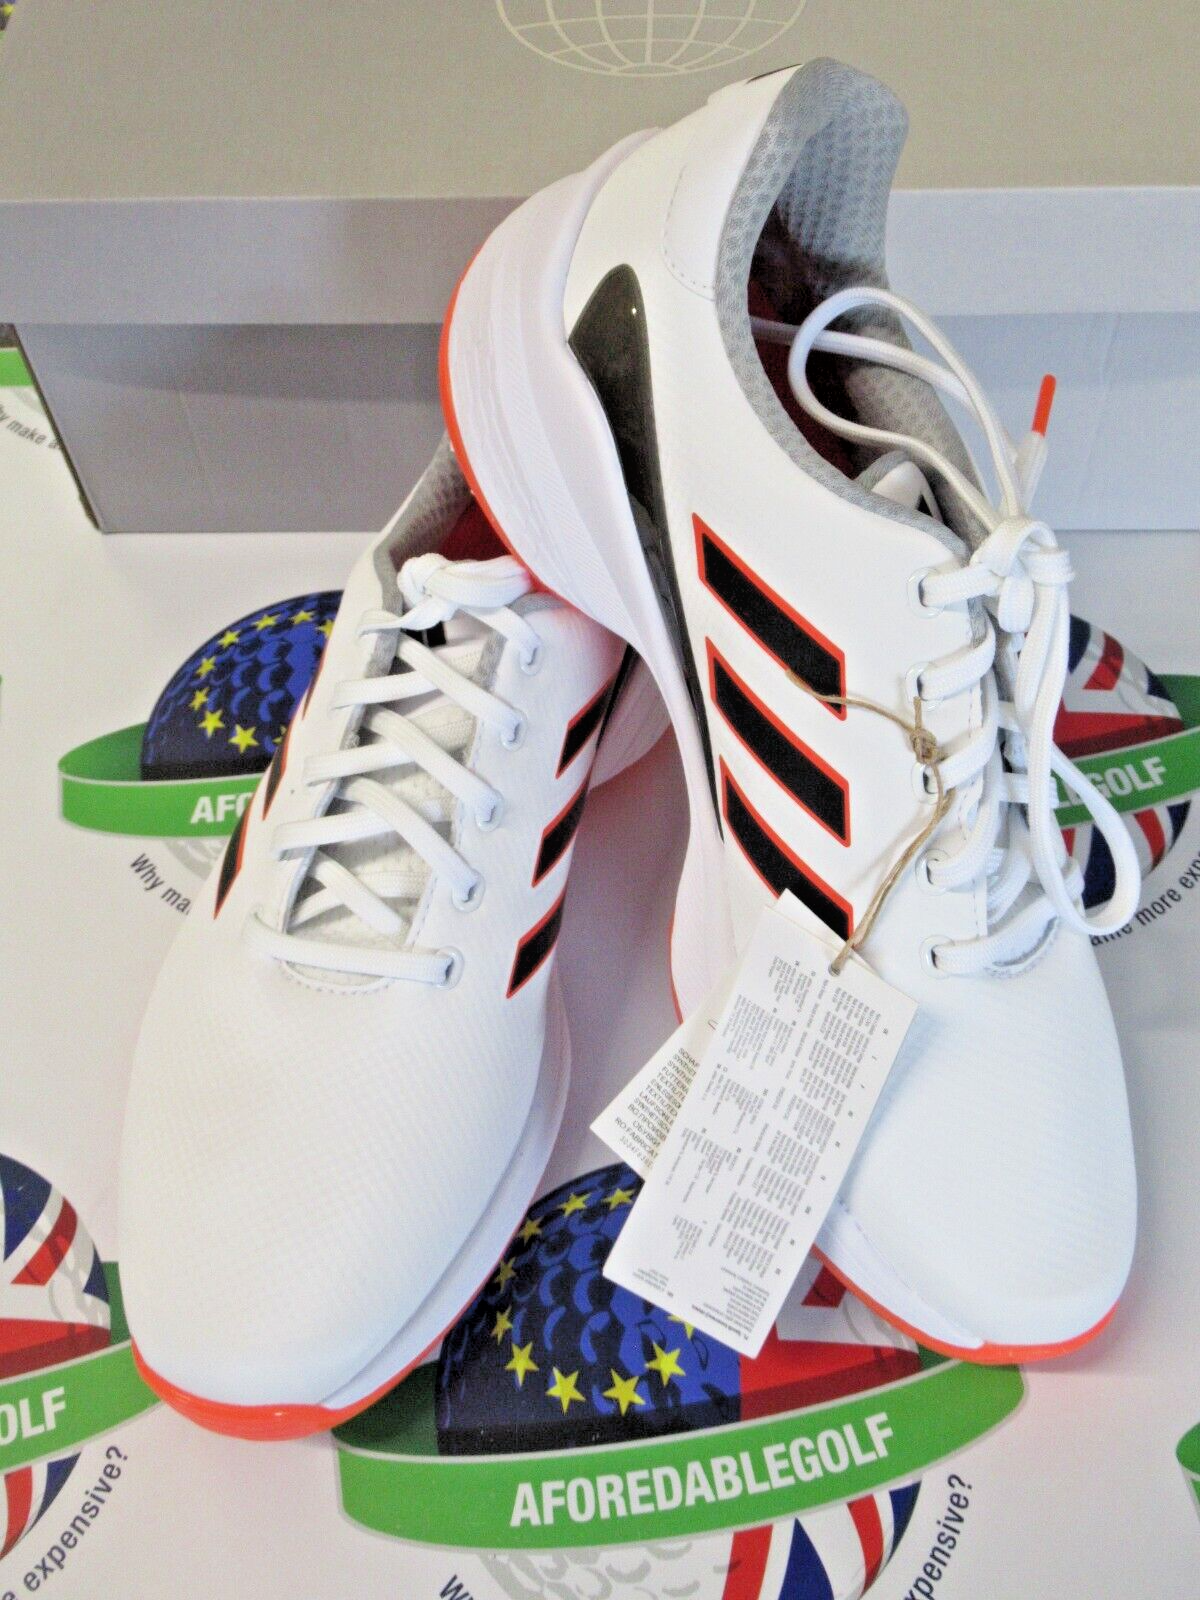 adidas zg23 waterproof golf shoes white/orange uk size 7